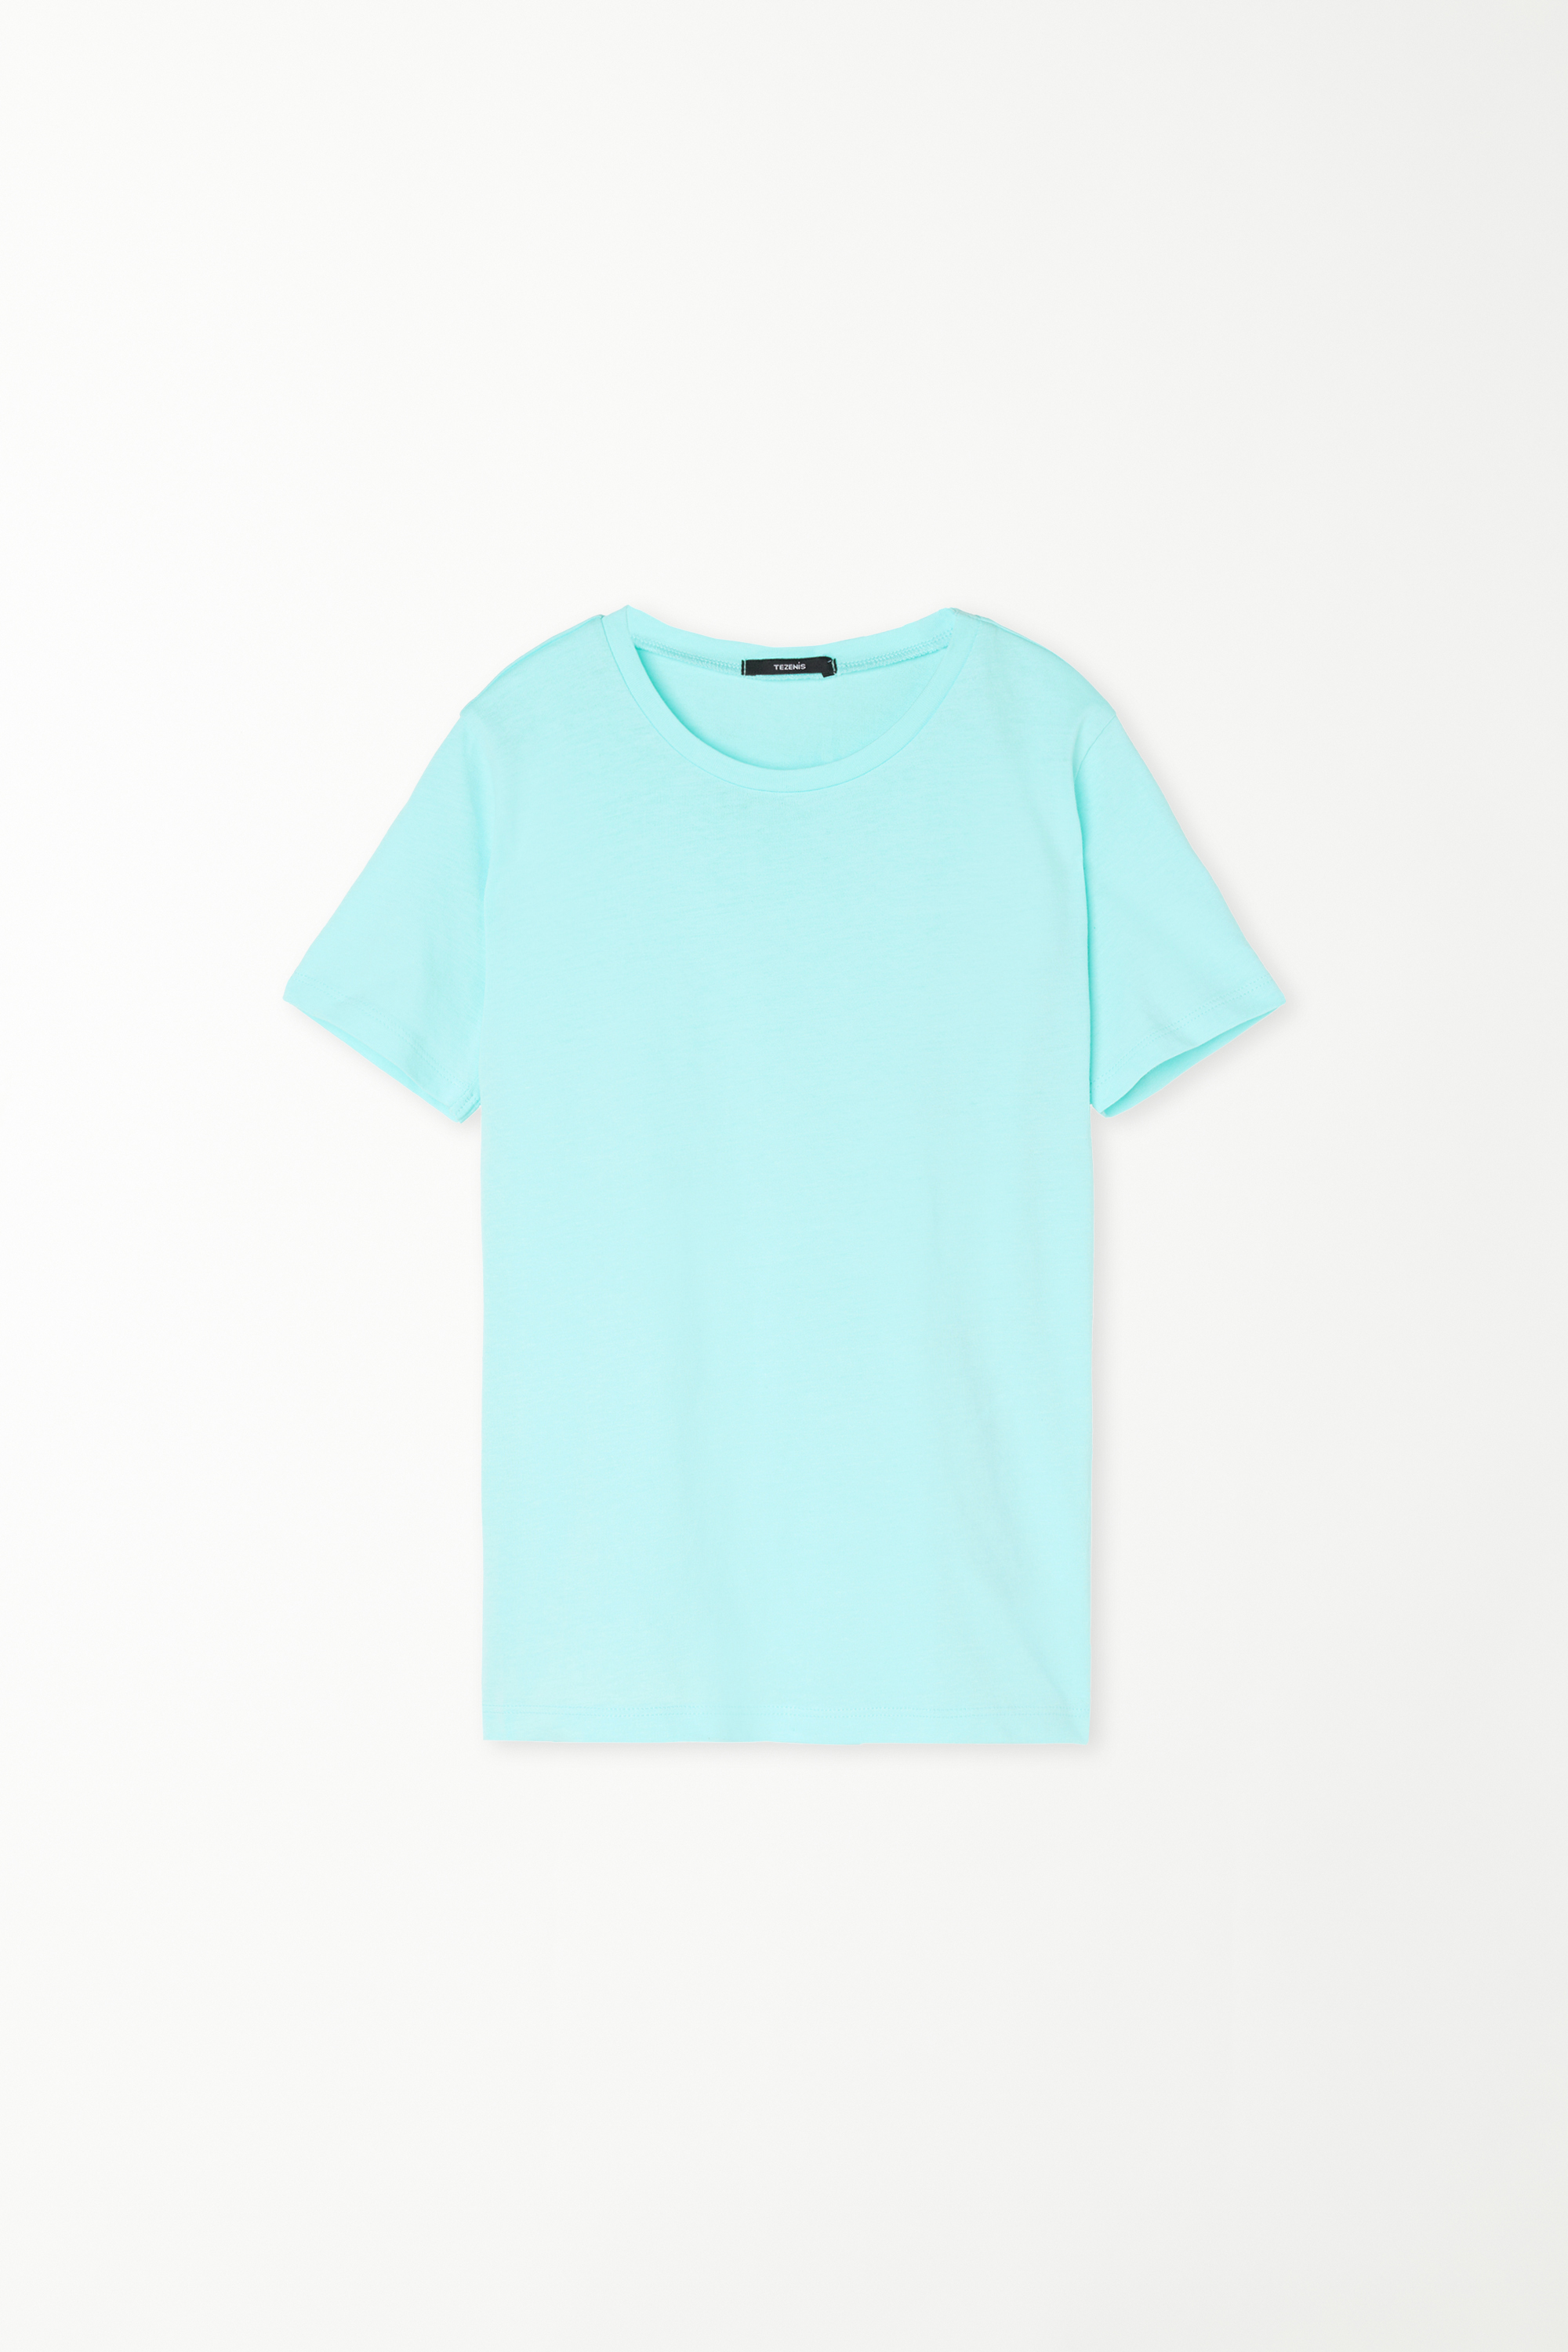 Unisex Kids’ 100% Cotton Basic T-shirt with Rounded Neck